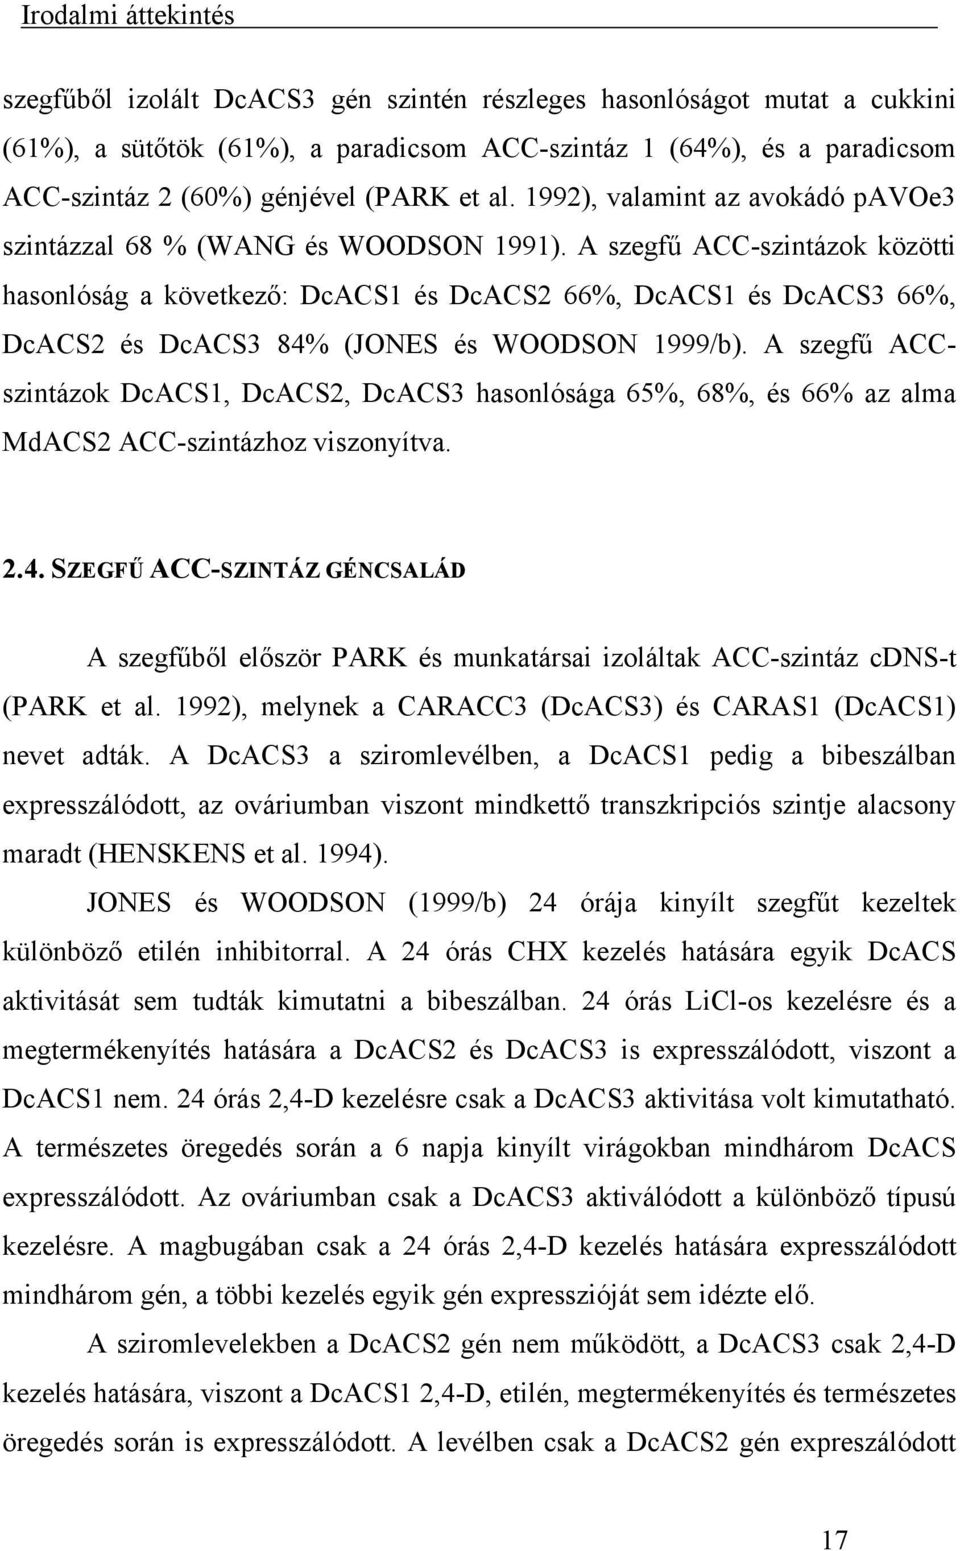 A szegfű ACC-szintázok közötti hasonlóság a következő: DcACS1 és DcACS2 66%, DcACS1 és DcACS3 66%, DcACS2 és DcACS3 84% (JONES és WOODSON 1999/b).